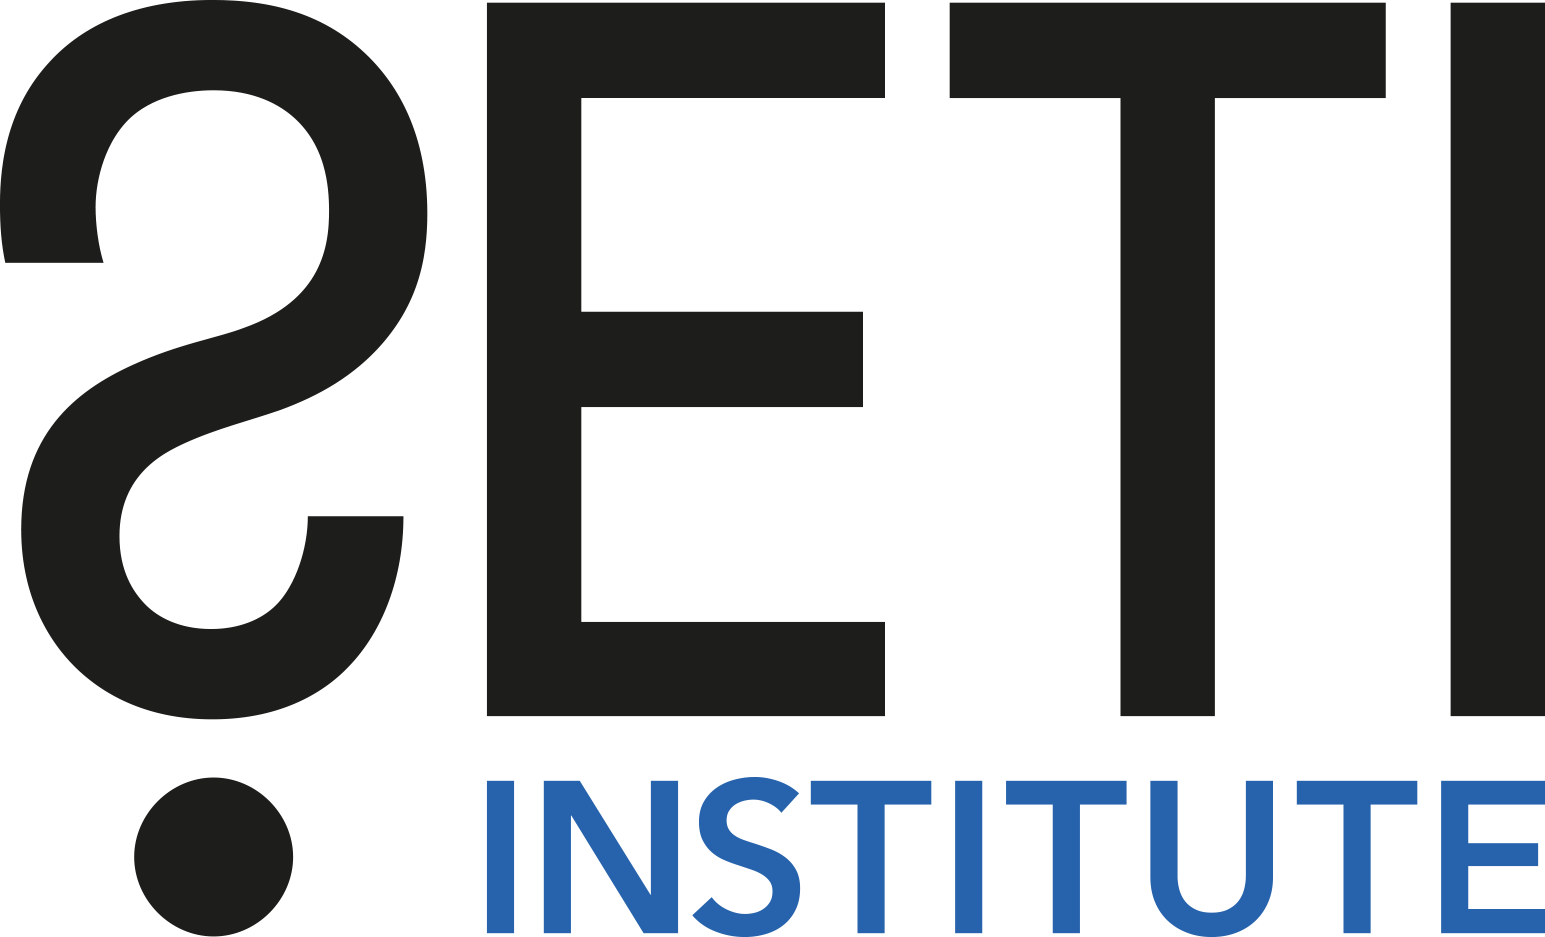 SETI Institute logo